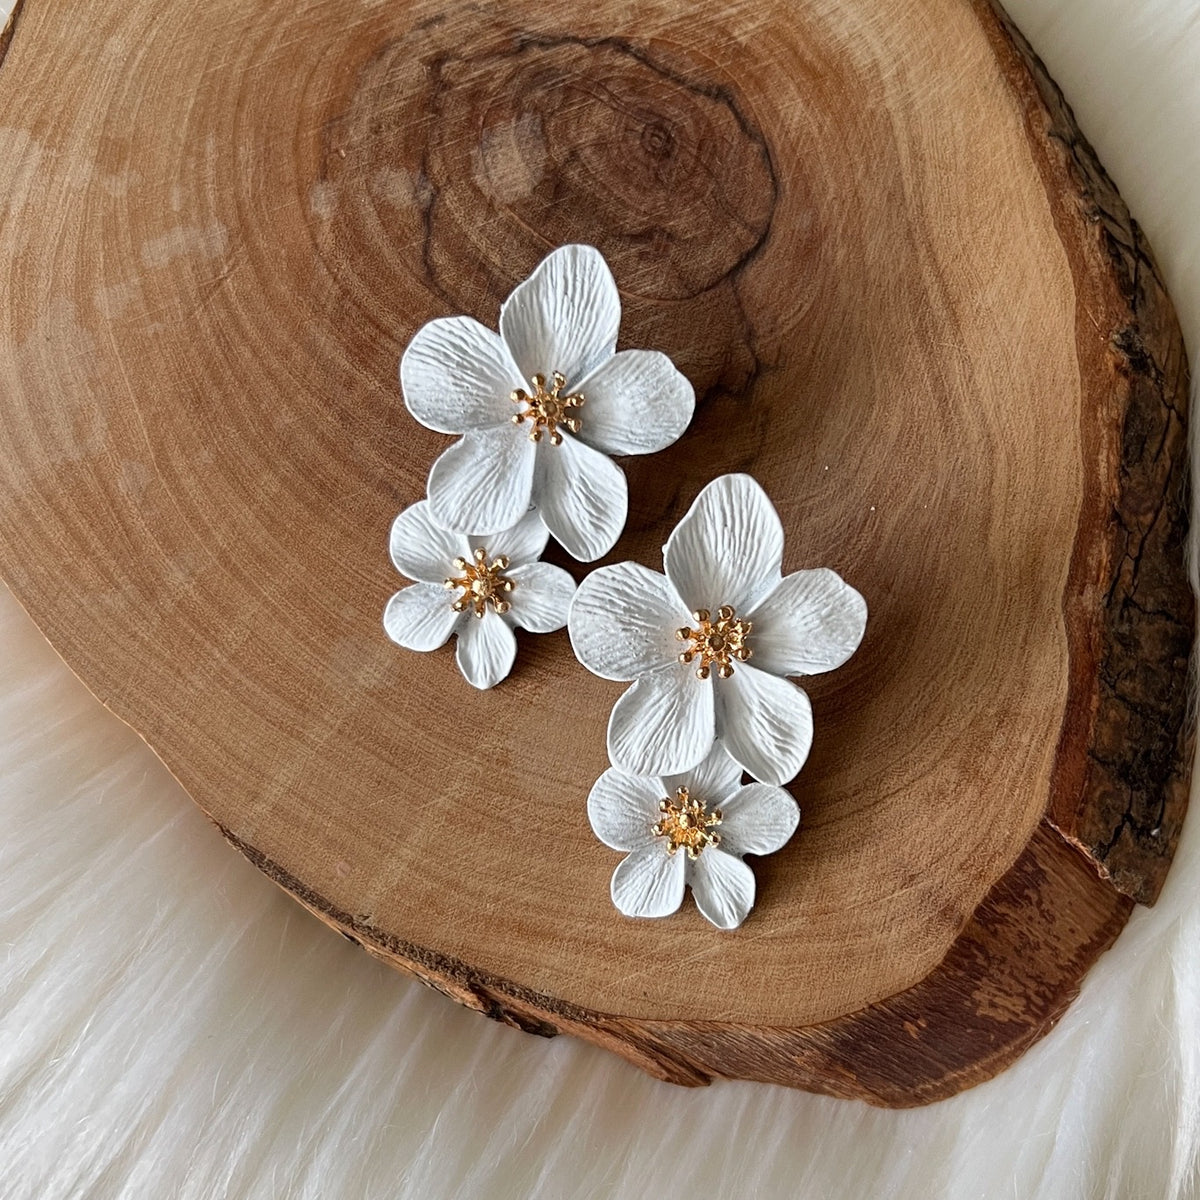 Hibiscus Flower Drop Earrings - 13 COLORS